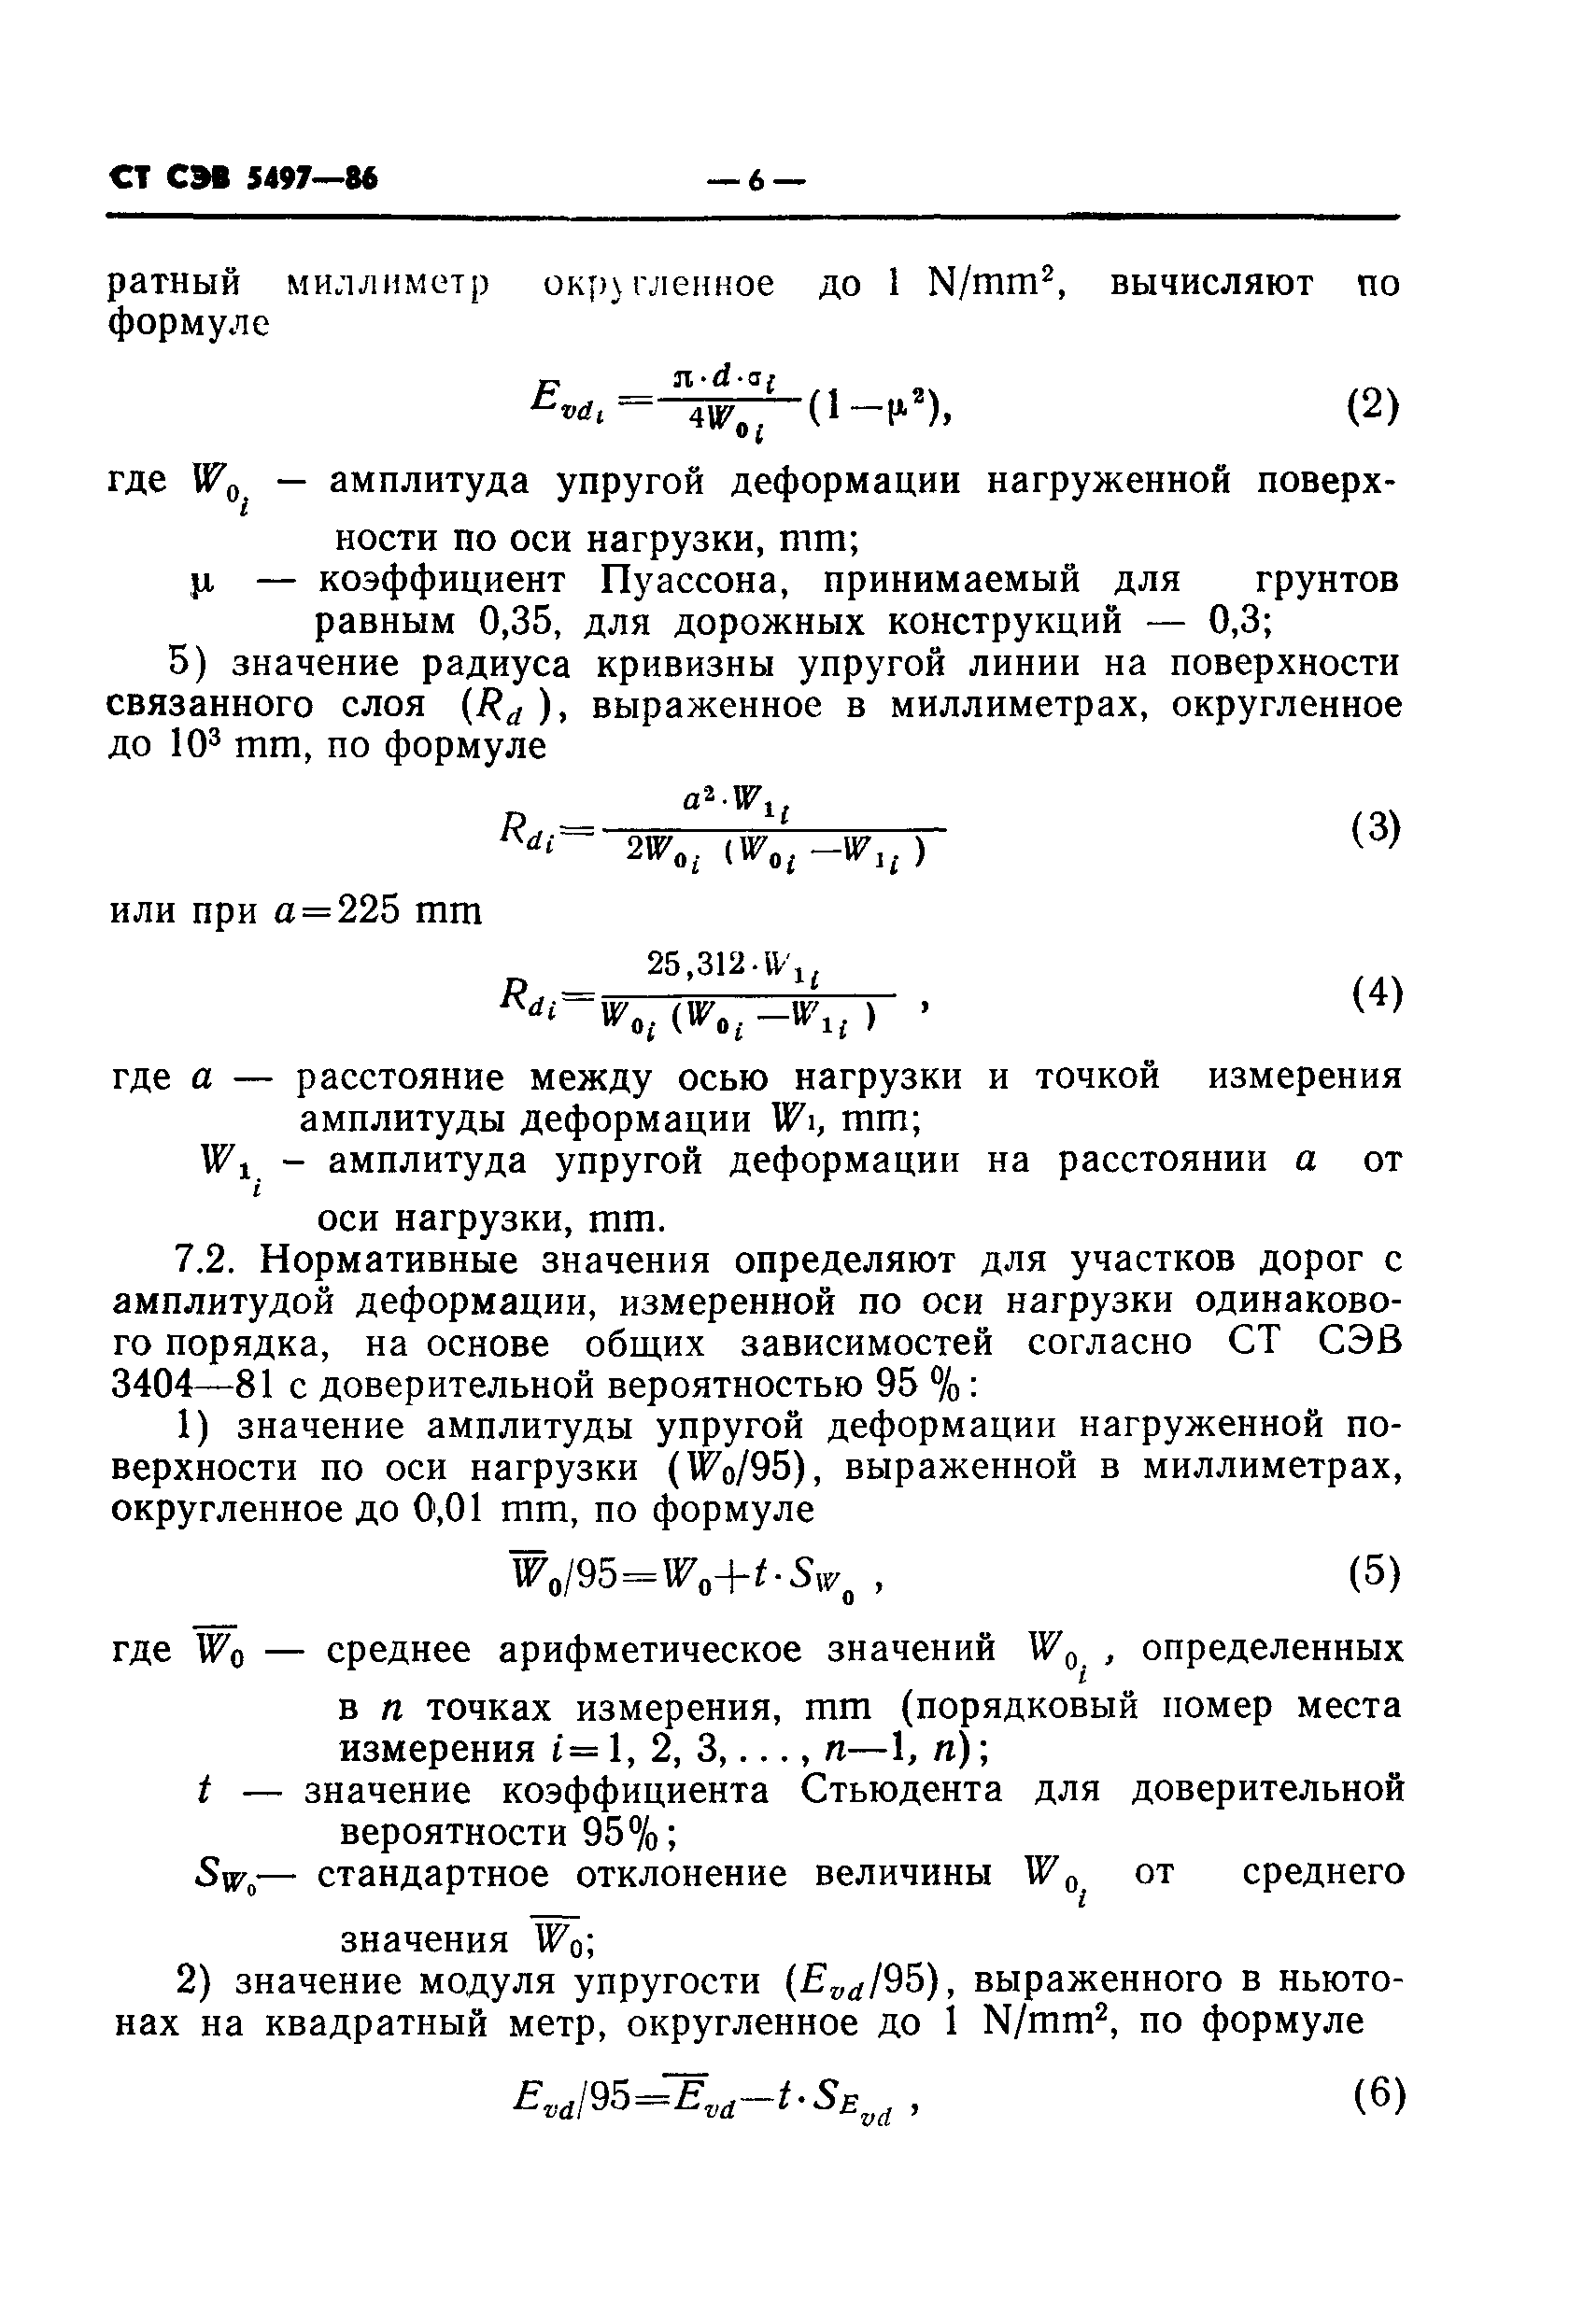 СТ СЭВ 5497-86